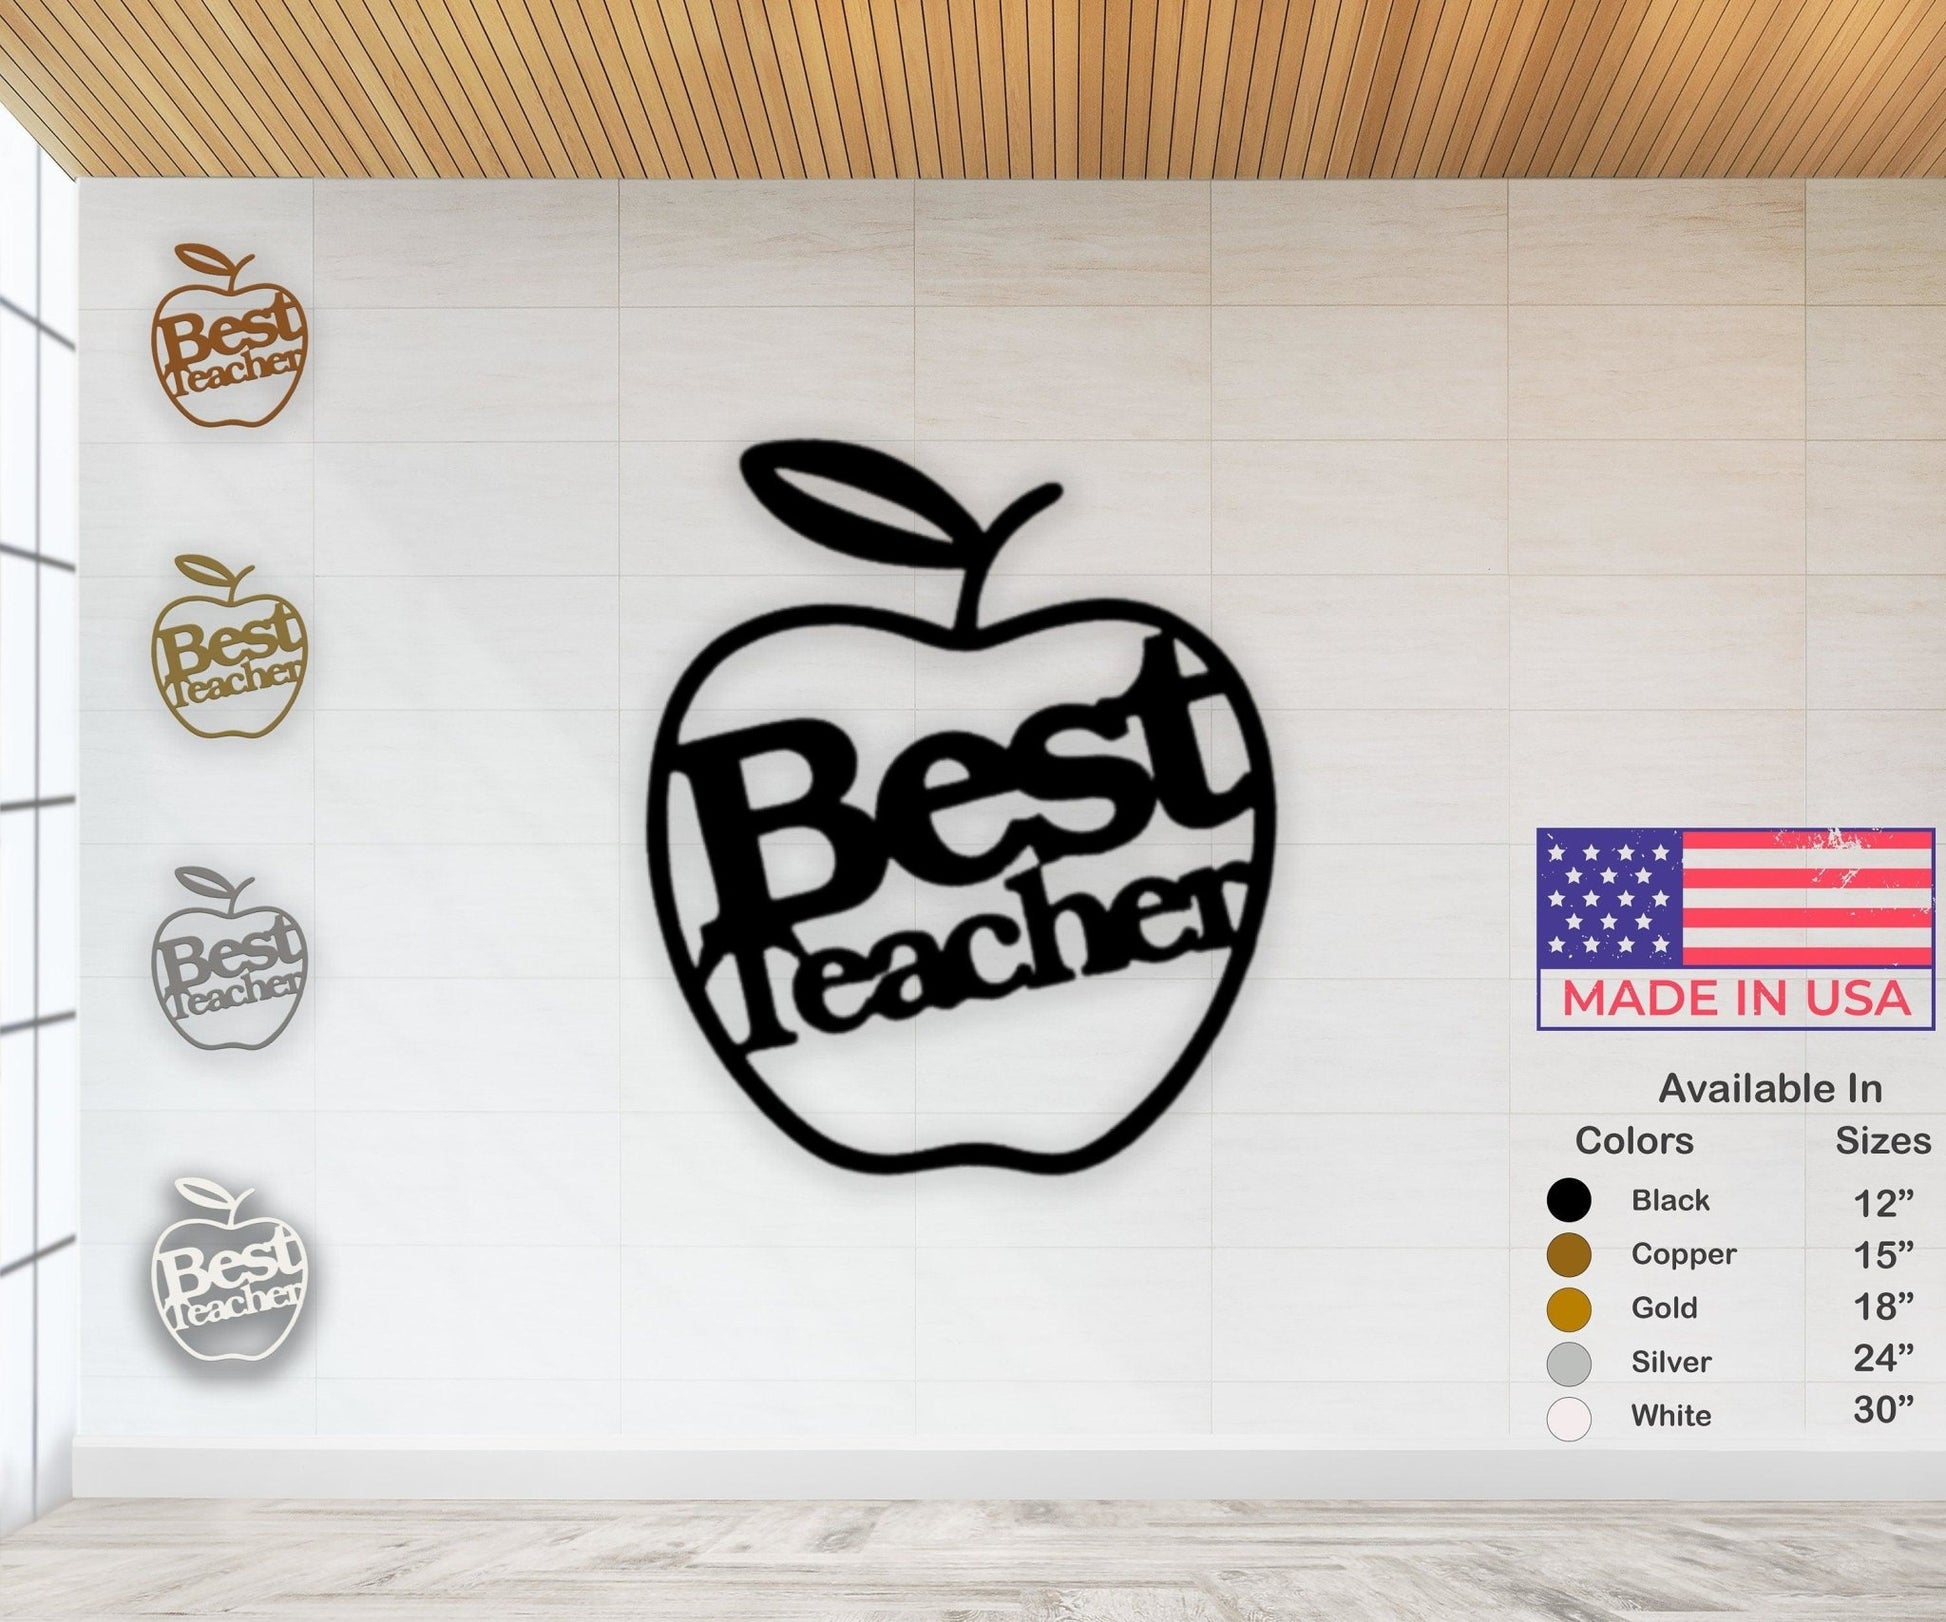 Best Teacher Gift - Metal Wall Sign - Teacher Appreciation Art - Classroom Decor - Stylinsoul